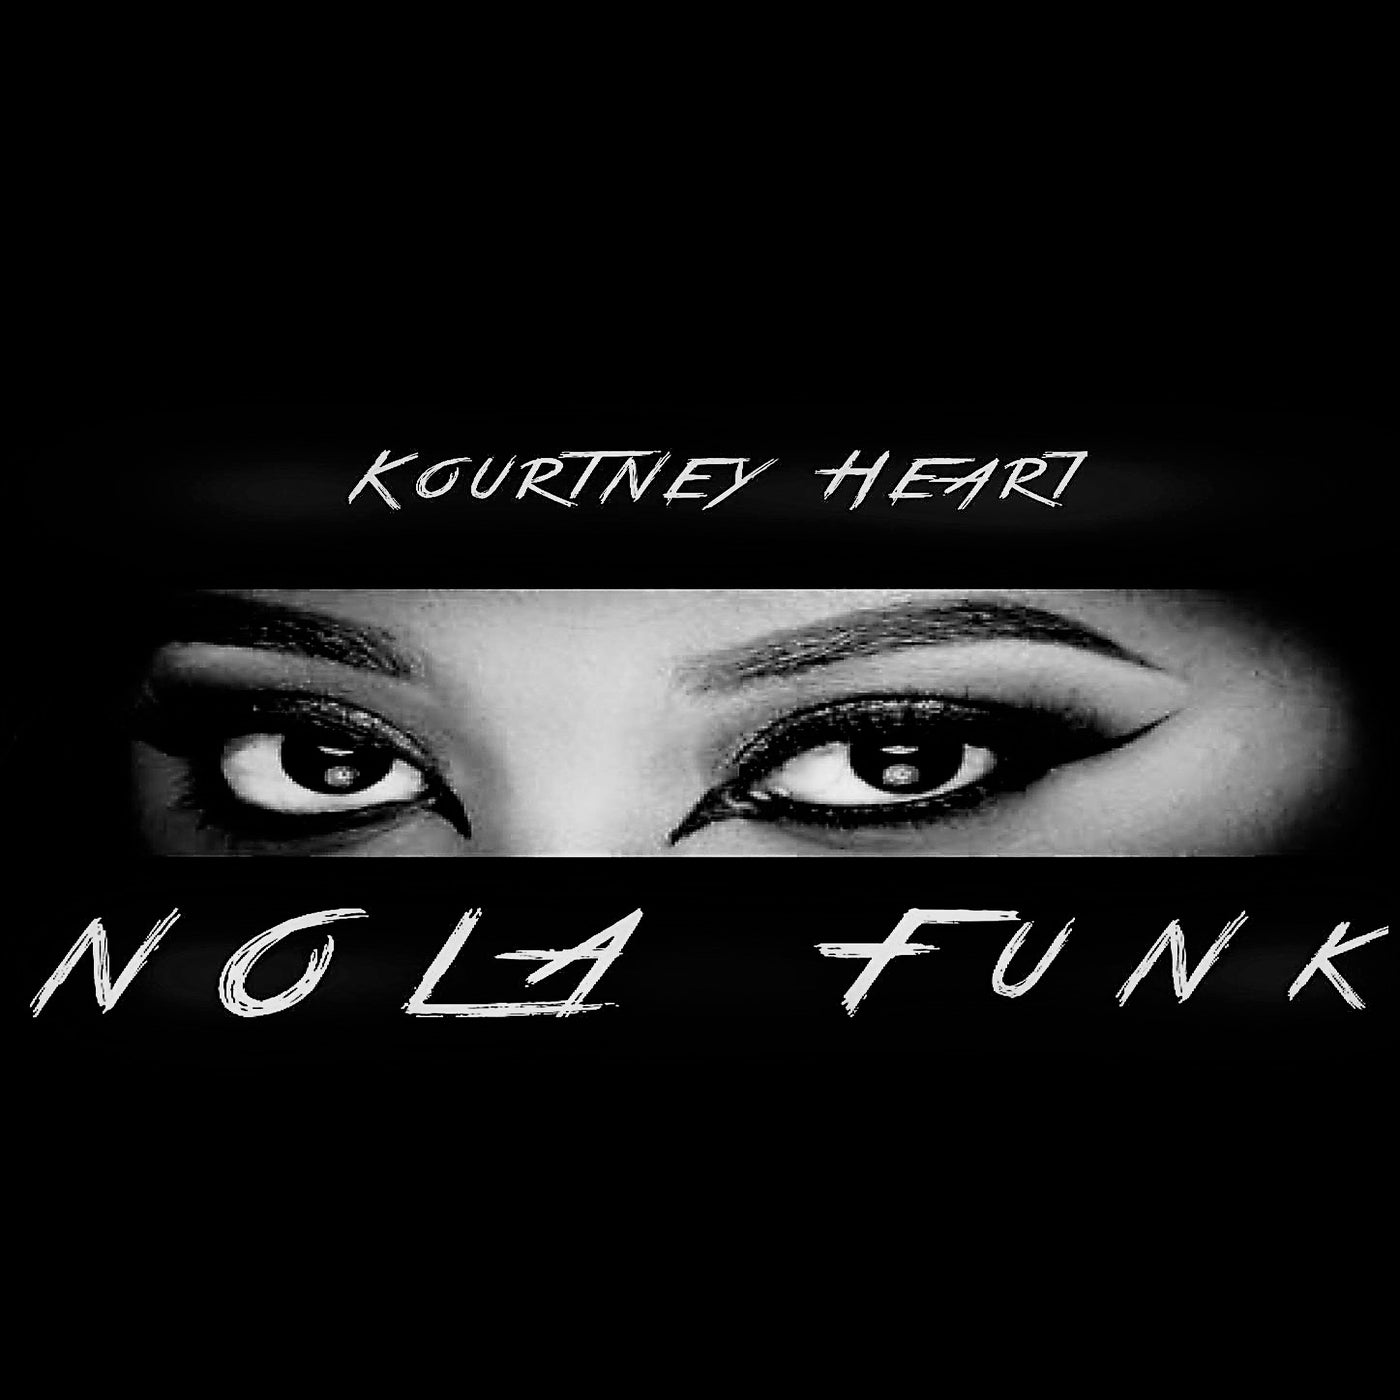 Nola Funk by Kourtney Heart on Beatsource